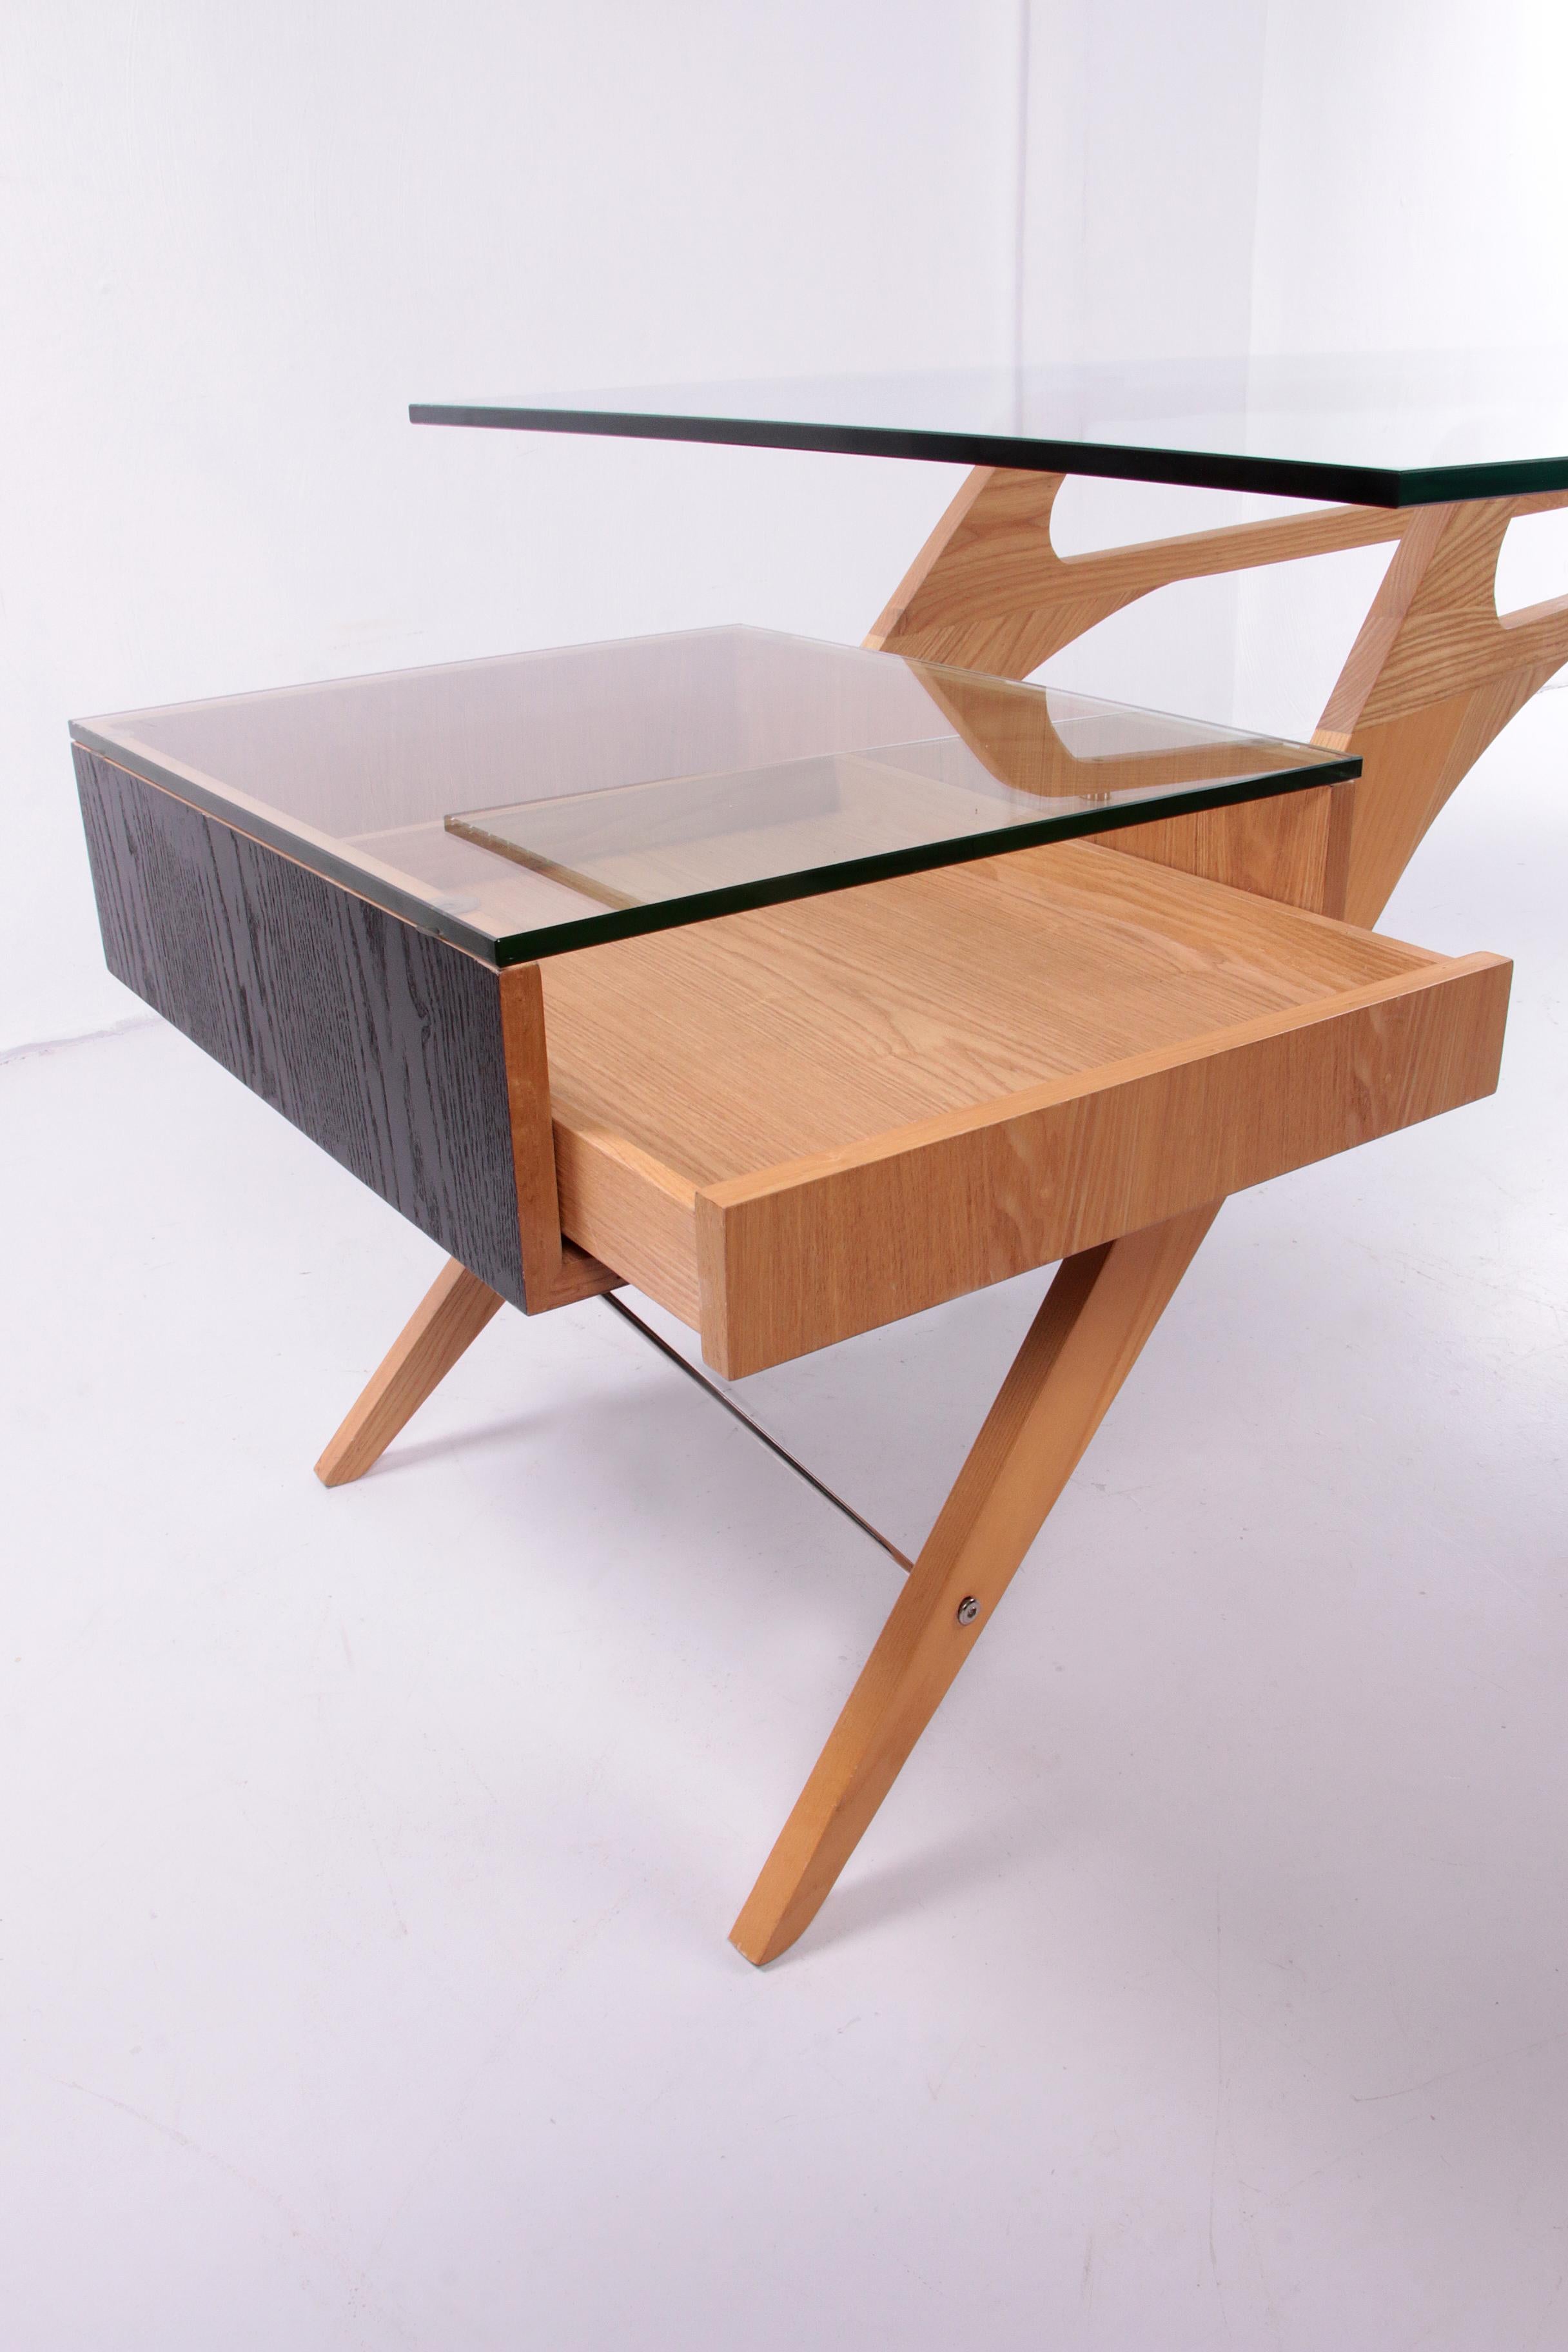 Zanotta Cavour CM desk designed by Carlo Mollino in 1949 3